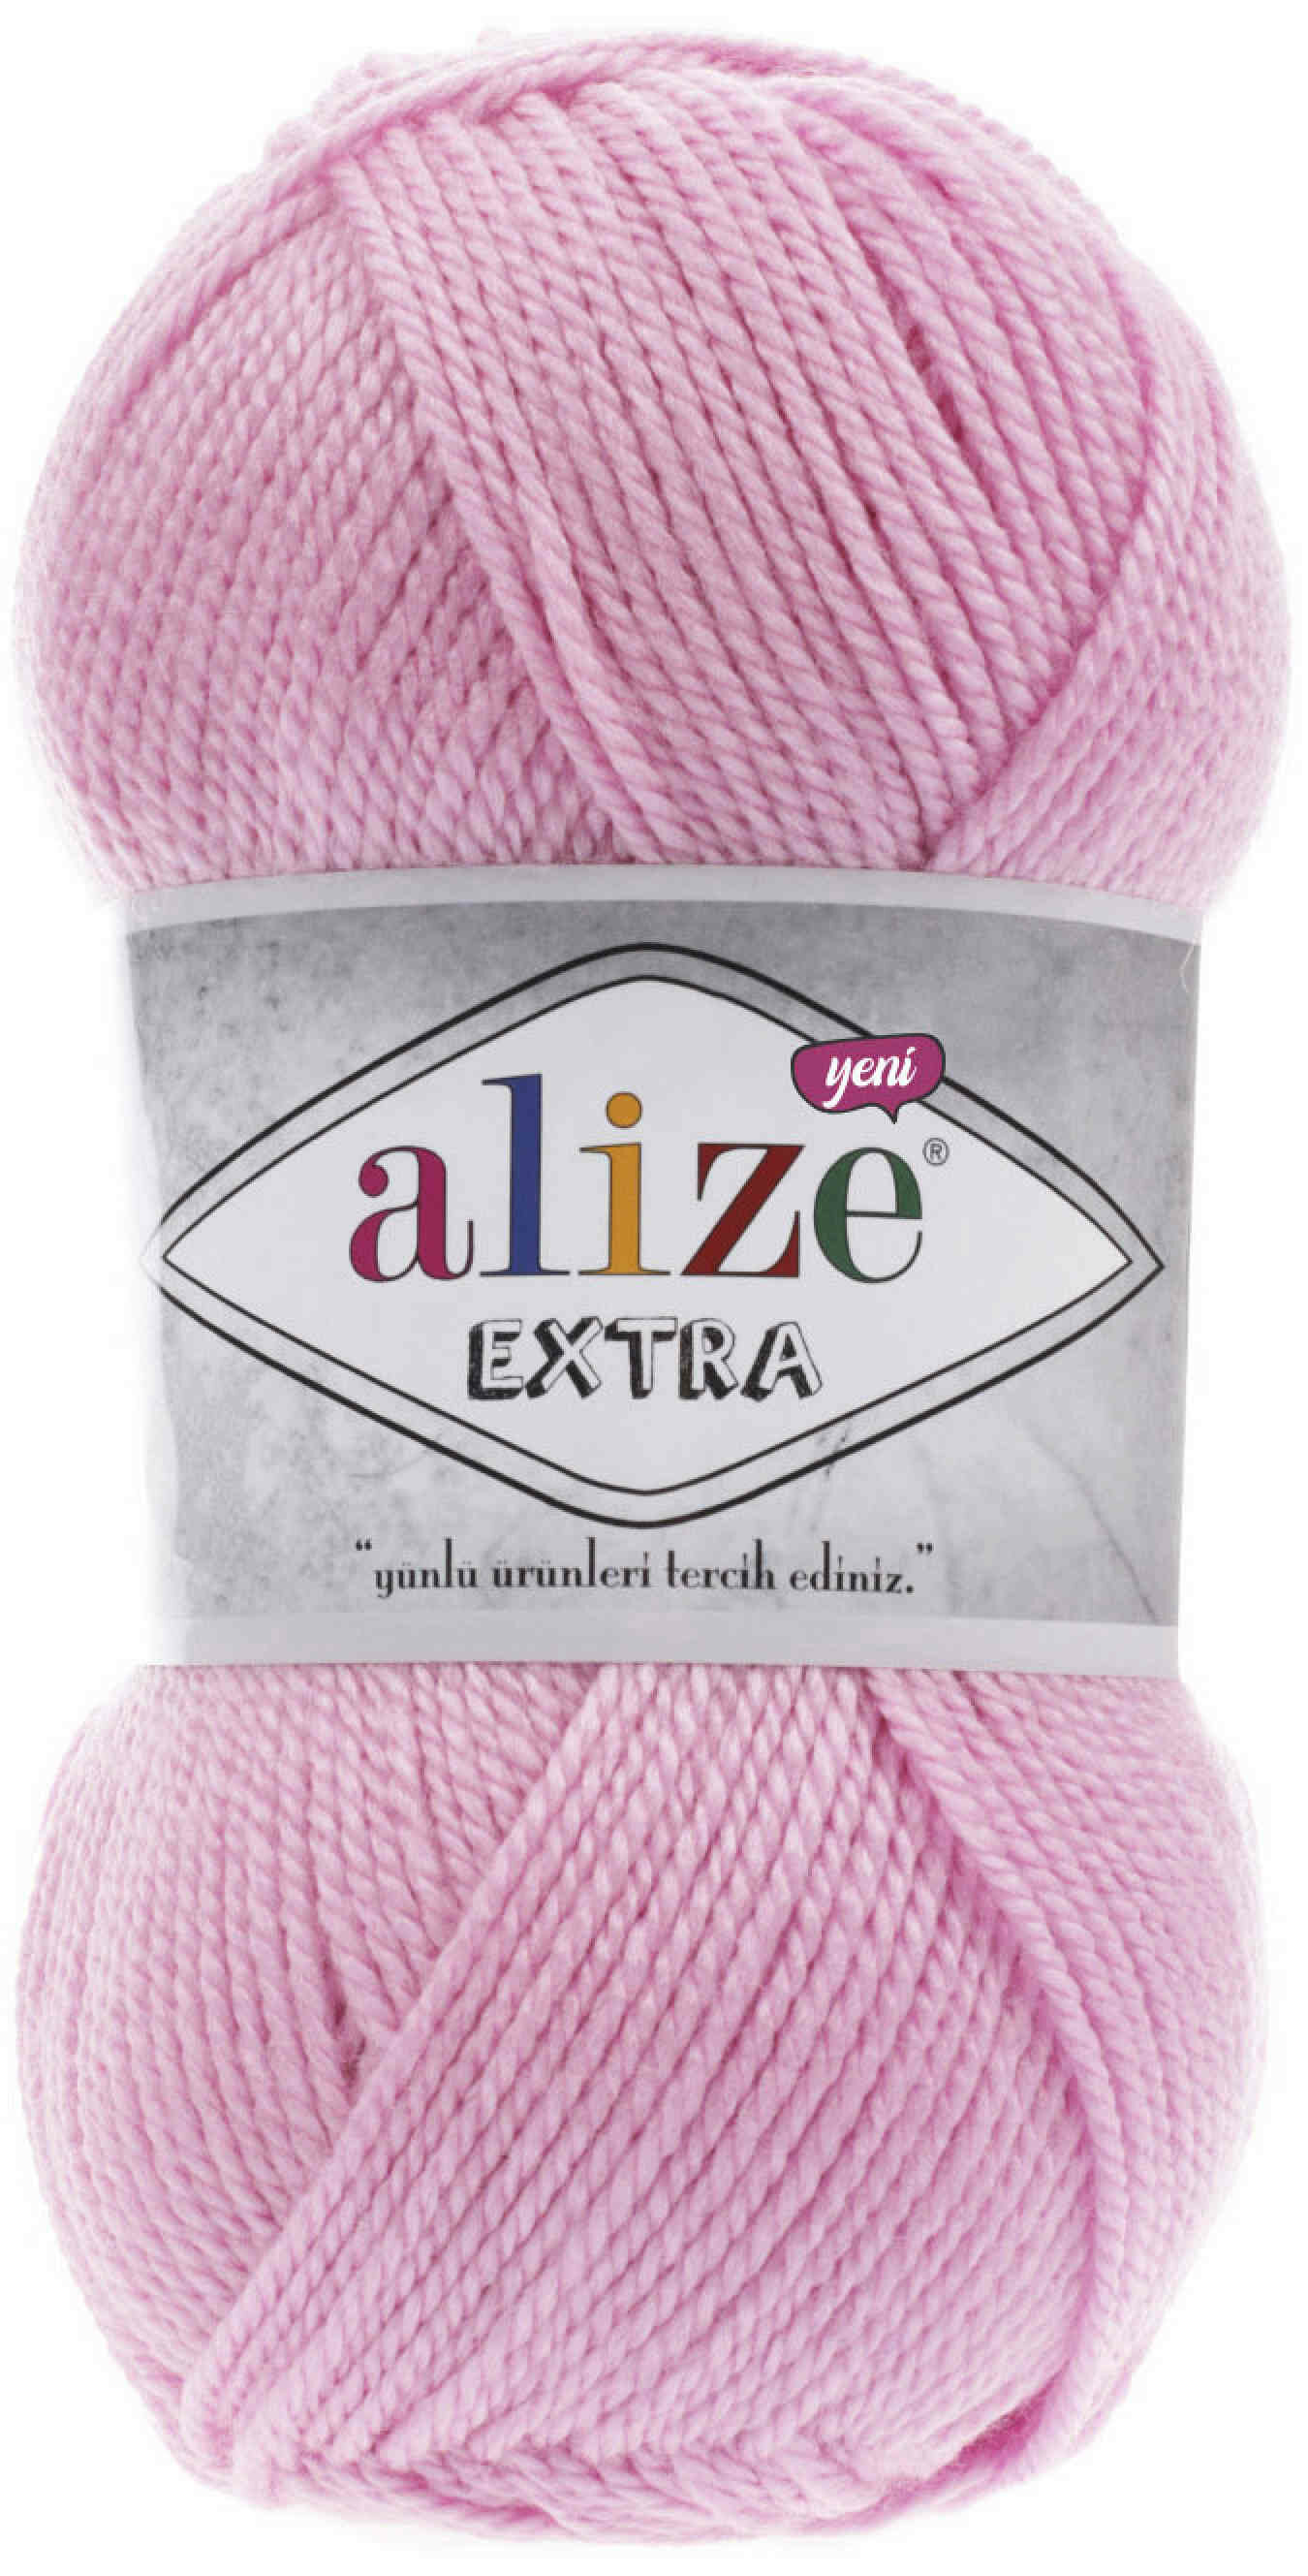 Пряжа Alize Extra ярко-розовый (191), 100%акрил, 220м, 100г, 2шт